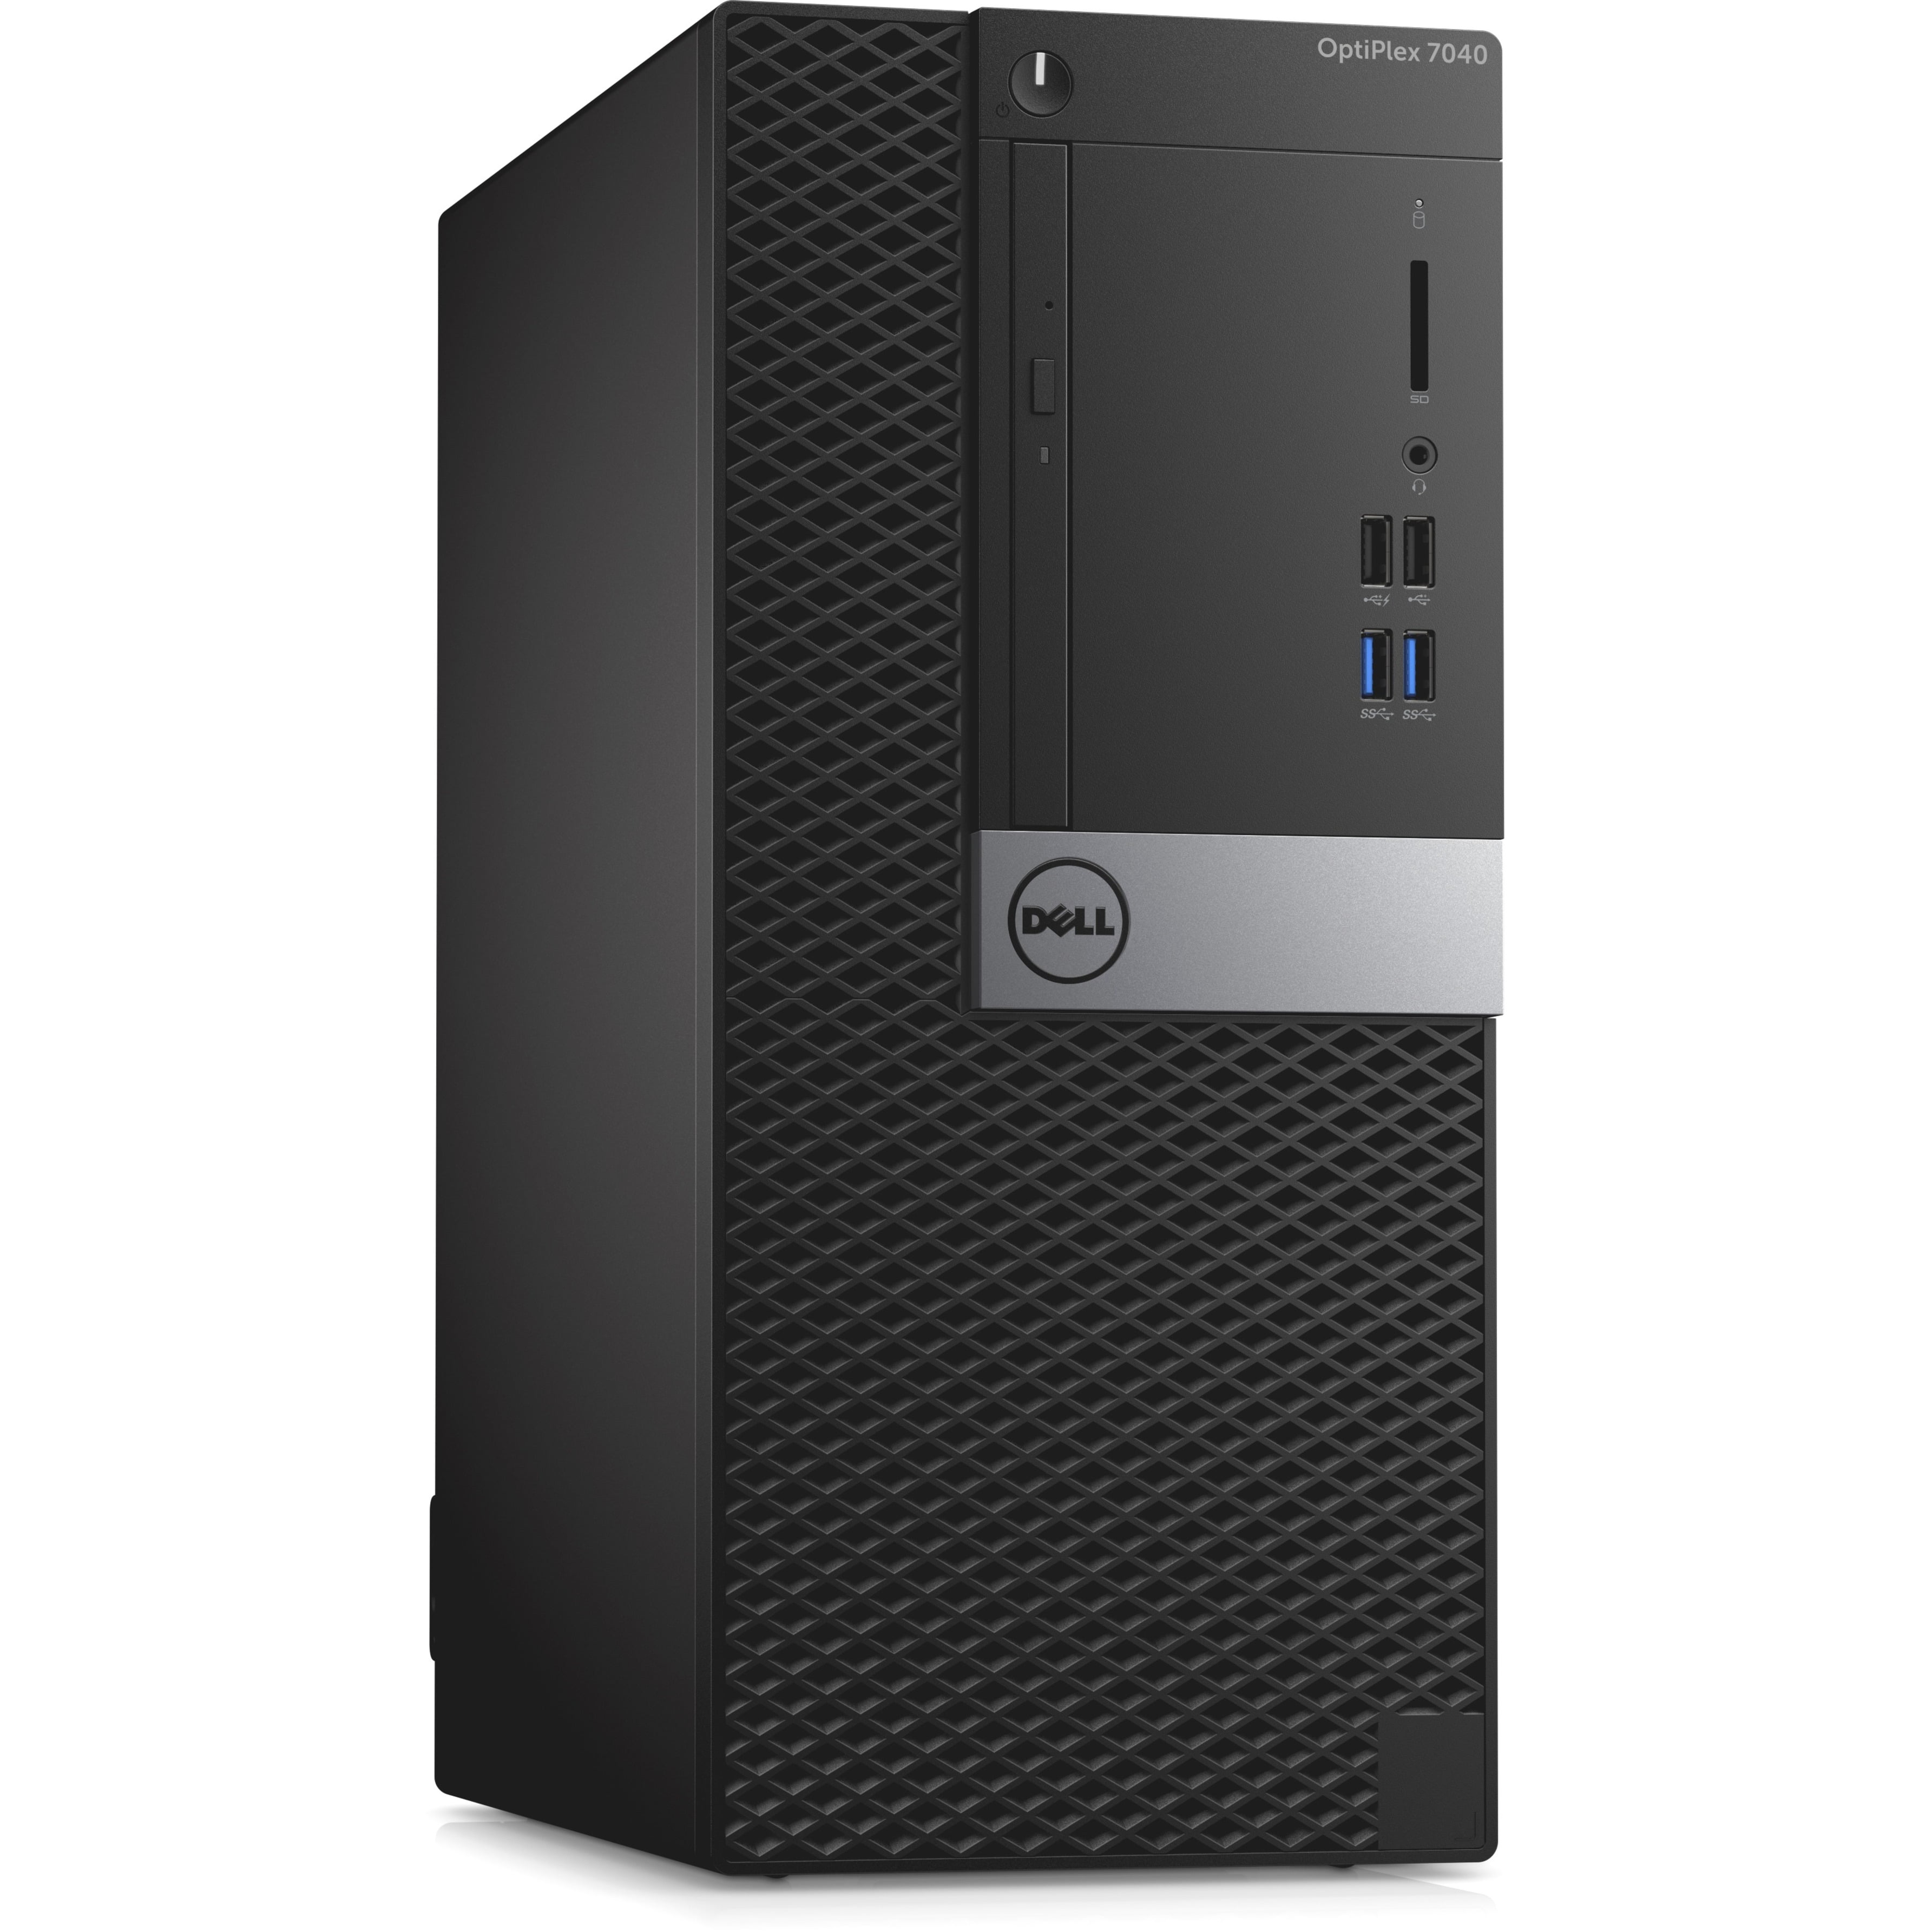 Dell OptiPlex Desktop Tower Computer, Intel Core i5 i5-6500, 8GB RAM, 500GB  HD, DVD Writer, Windows 10 Pro, 7040